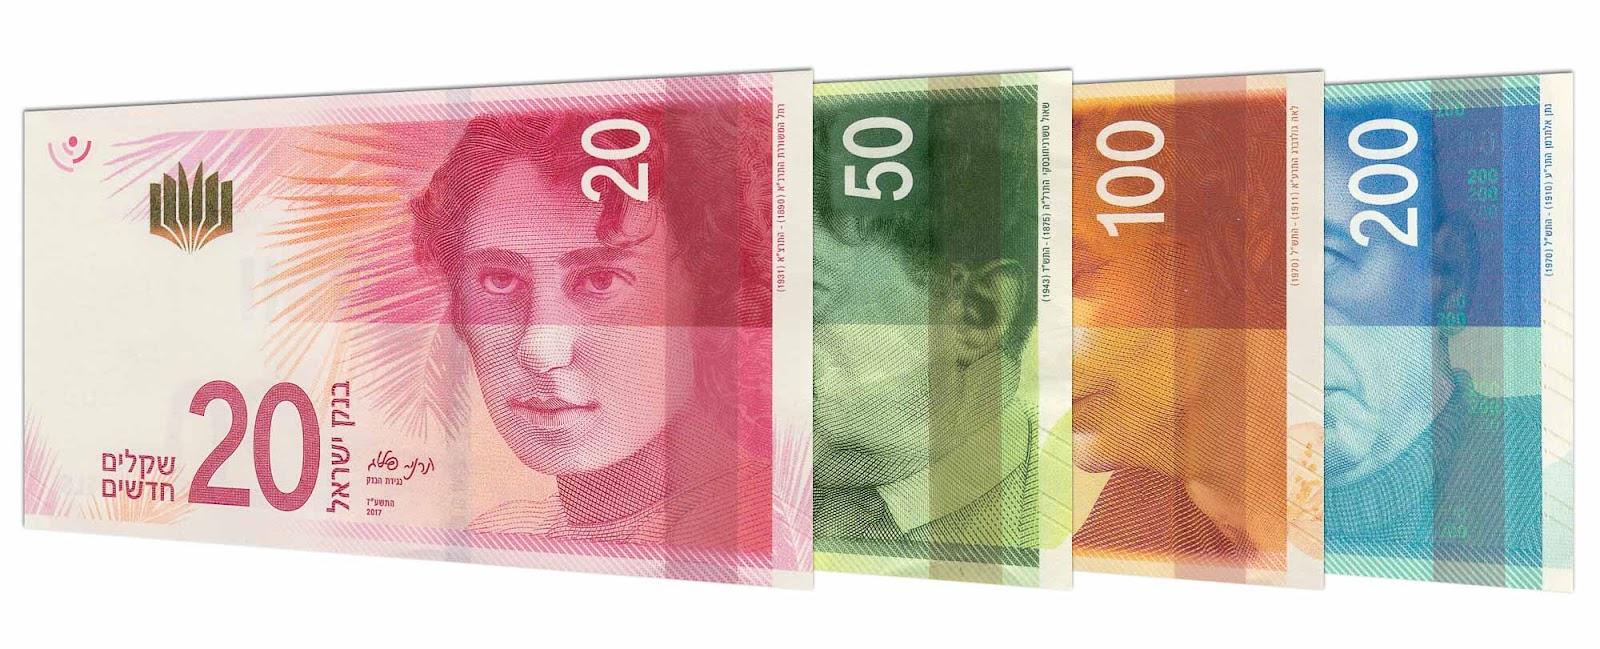 Israeli new shekel banknote series